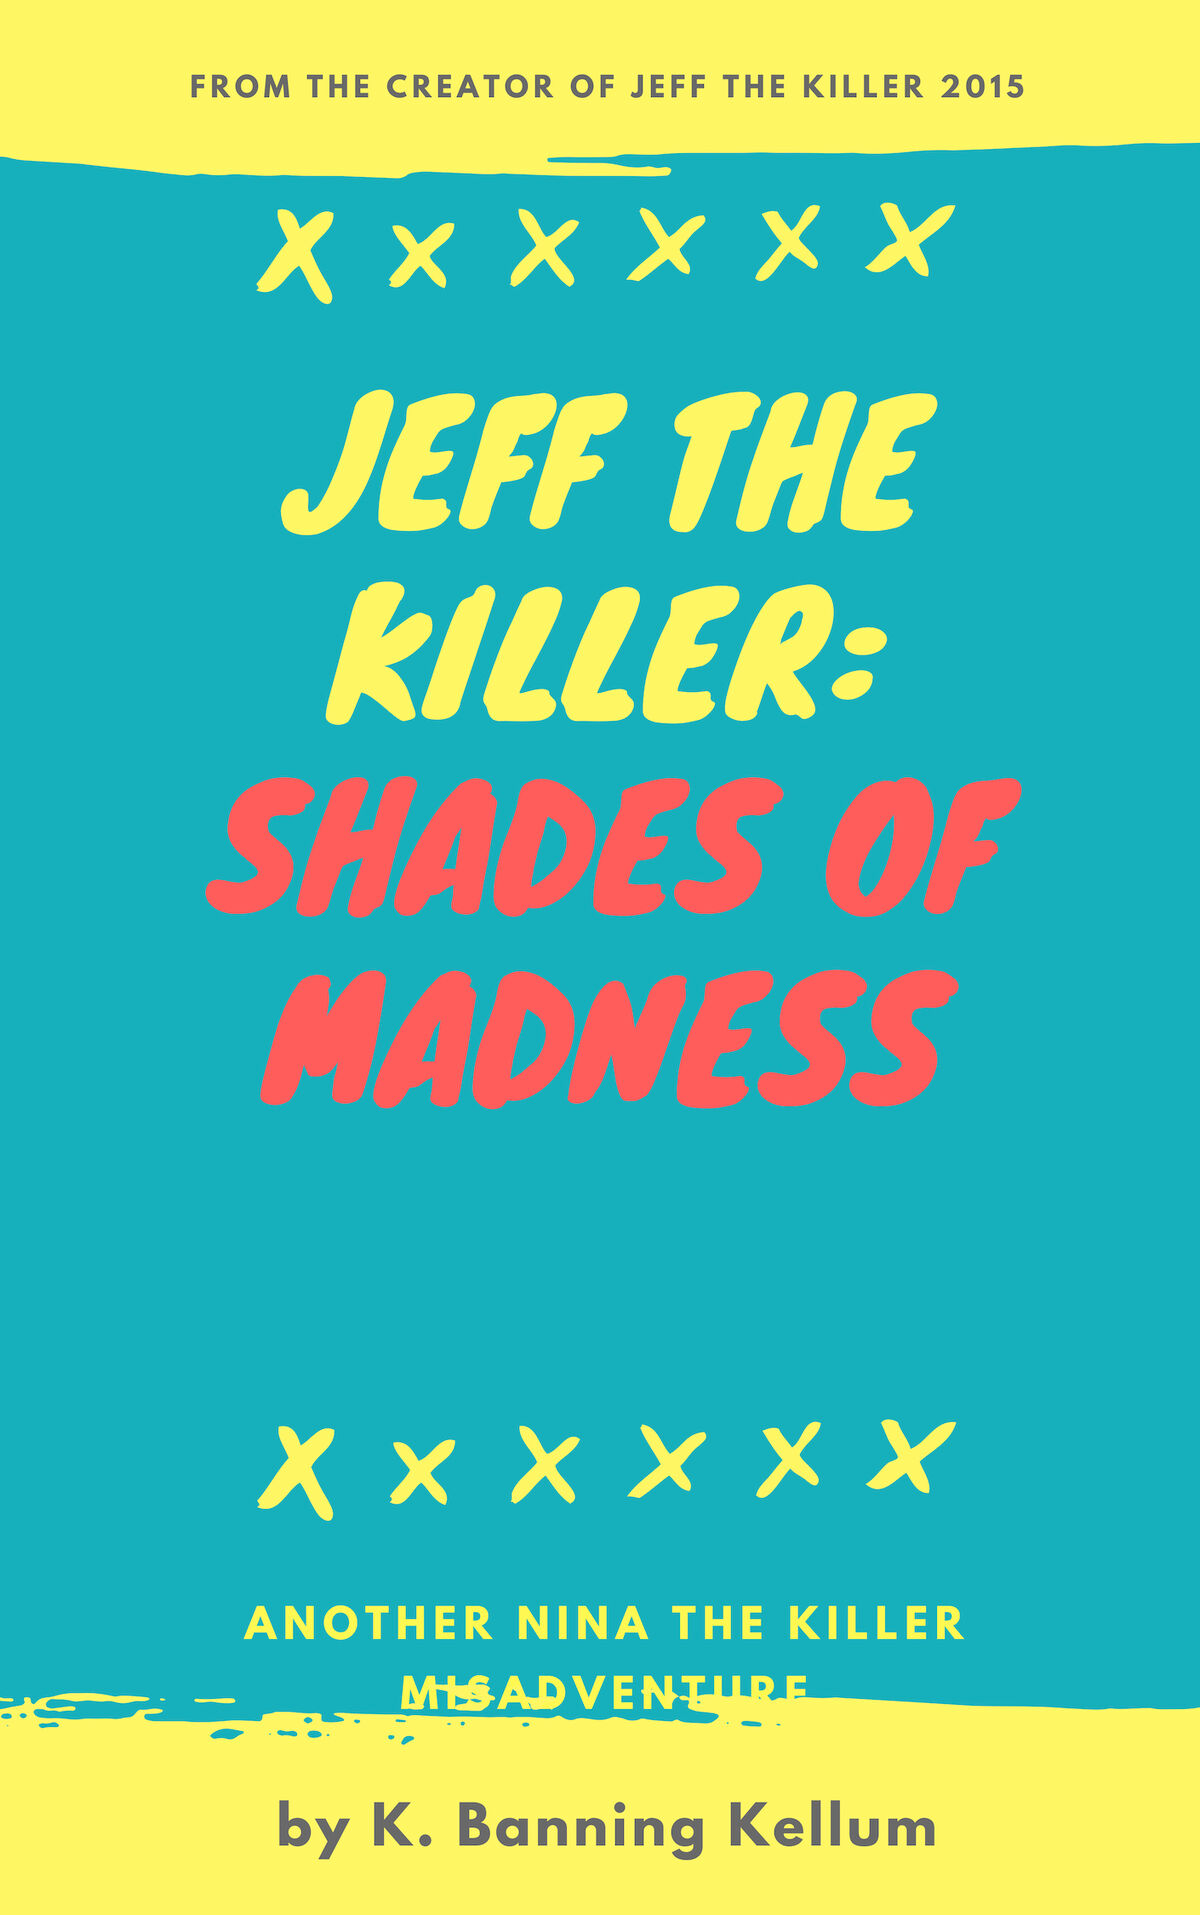 From legendary horror icon to internet meme: Jeff the Killer